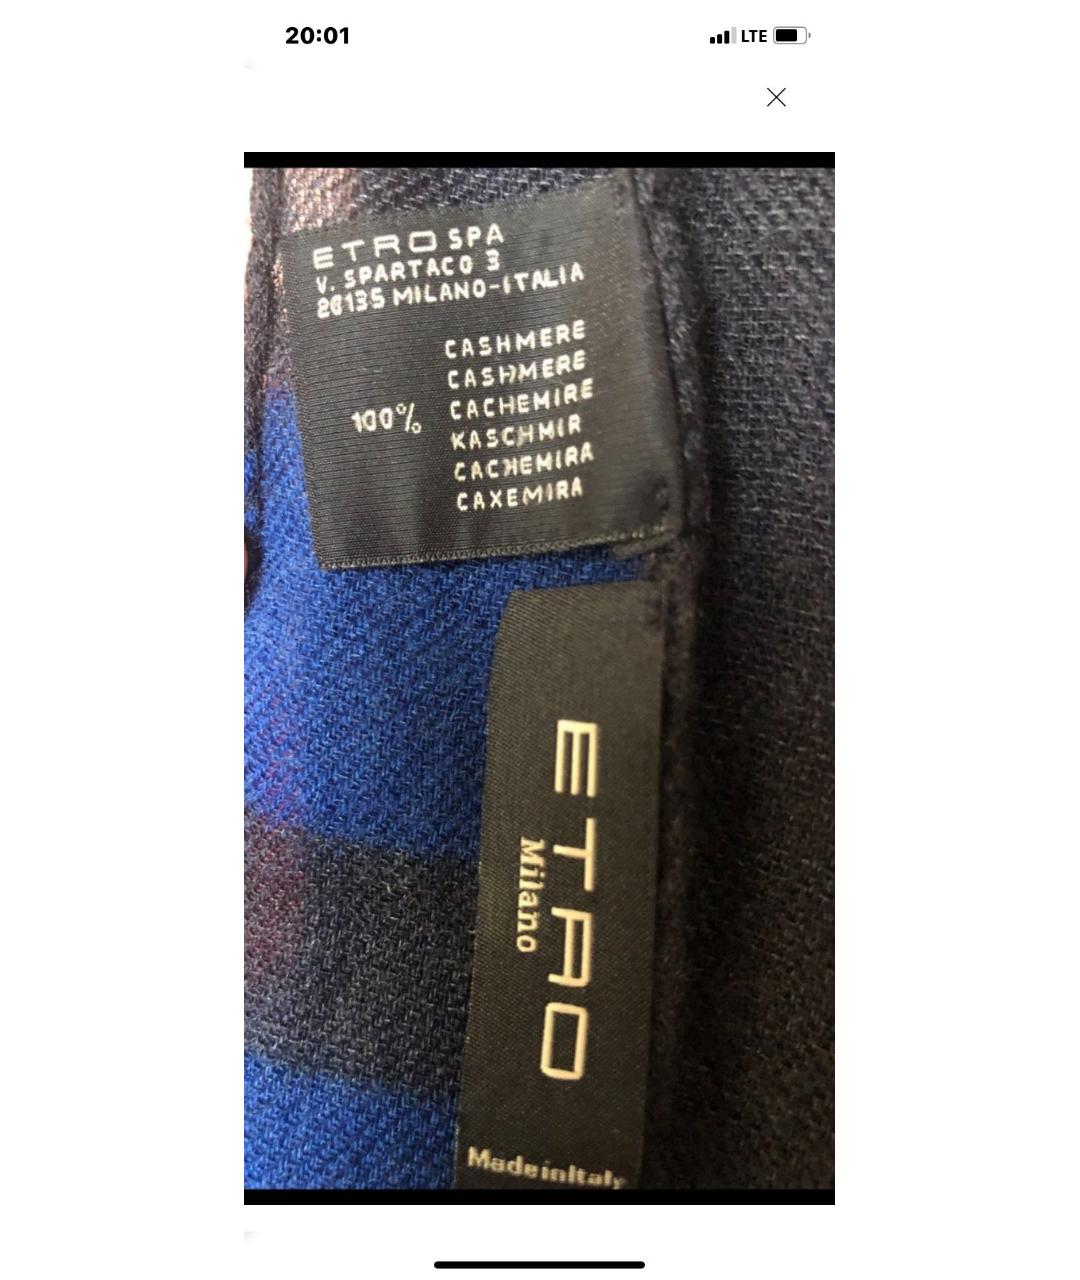 ETRO Синий кашемировый шарф, фото 3